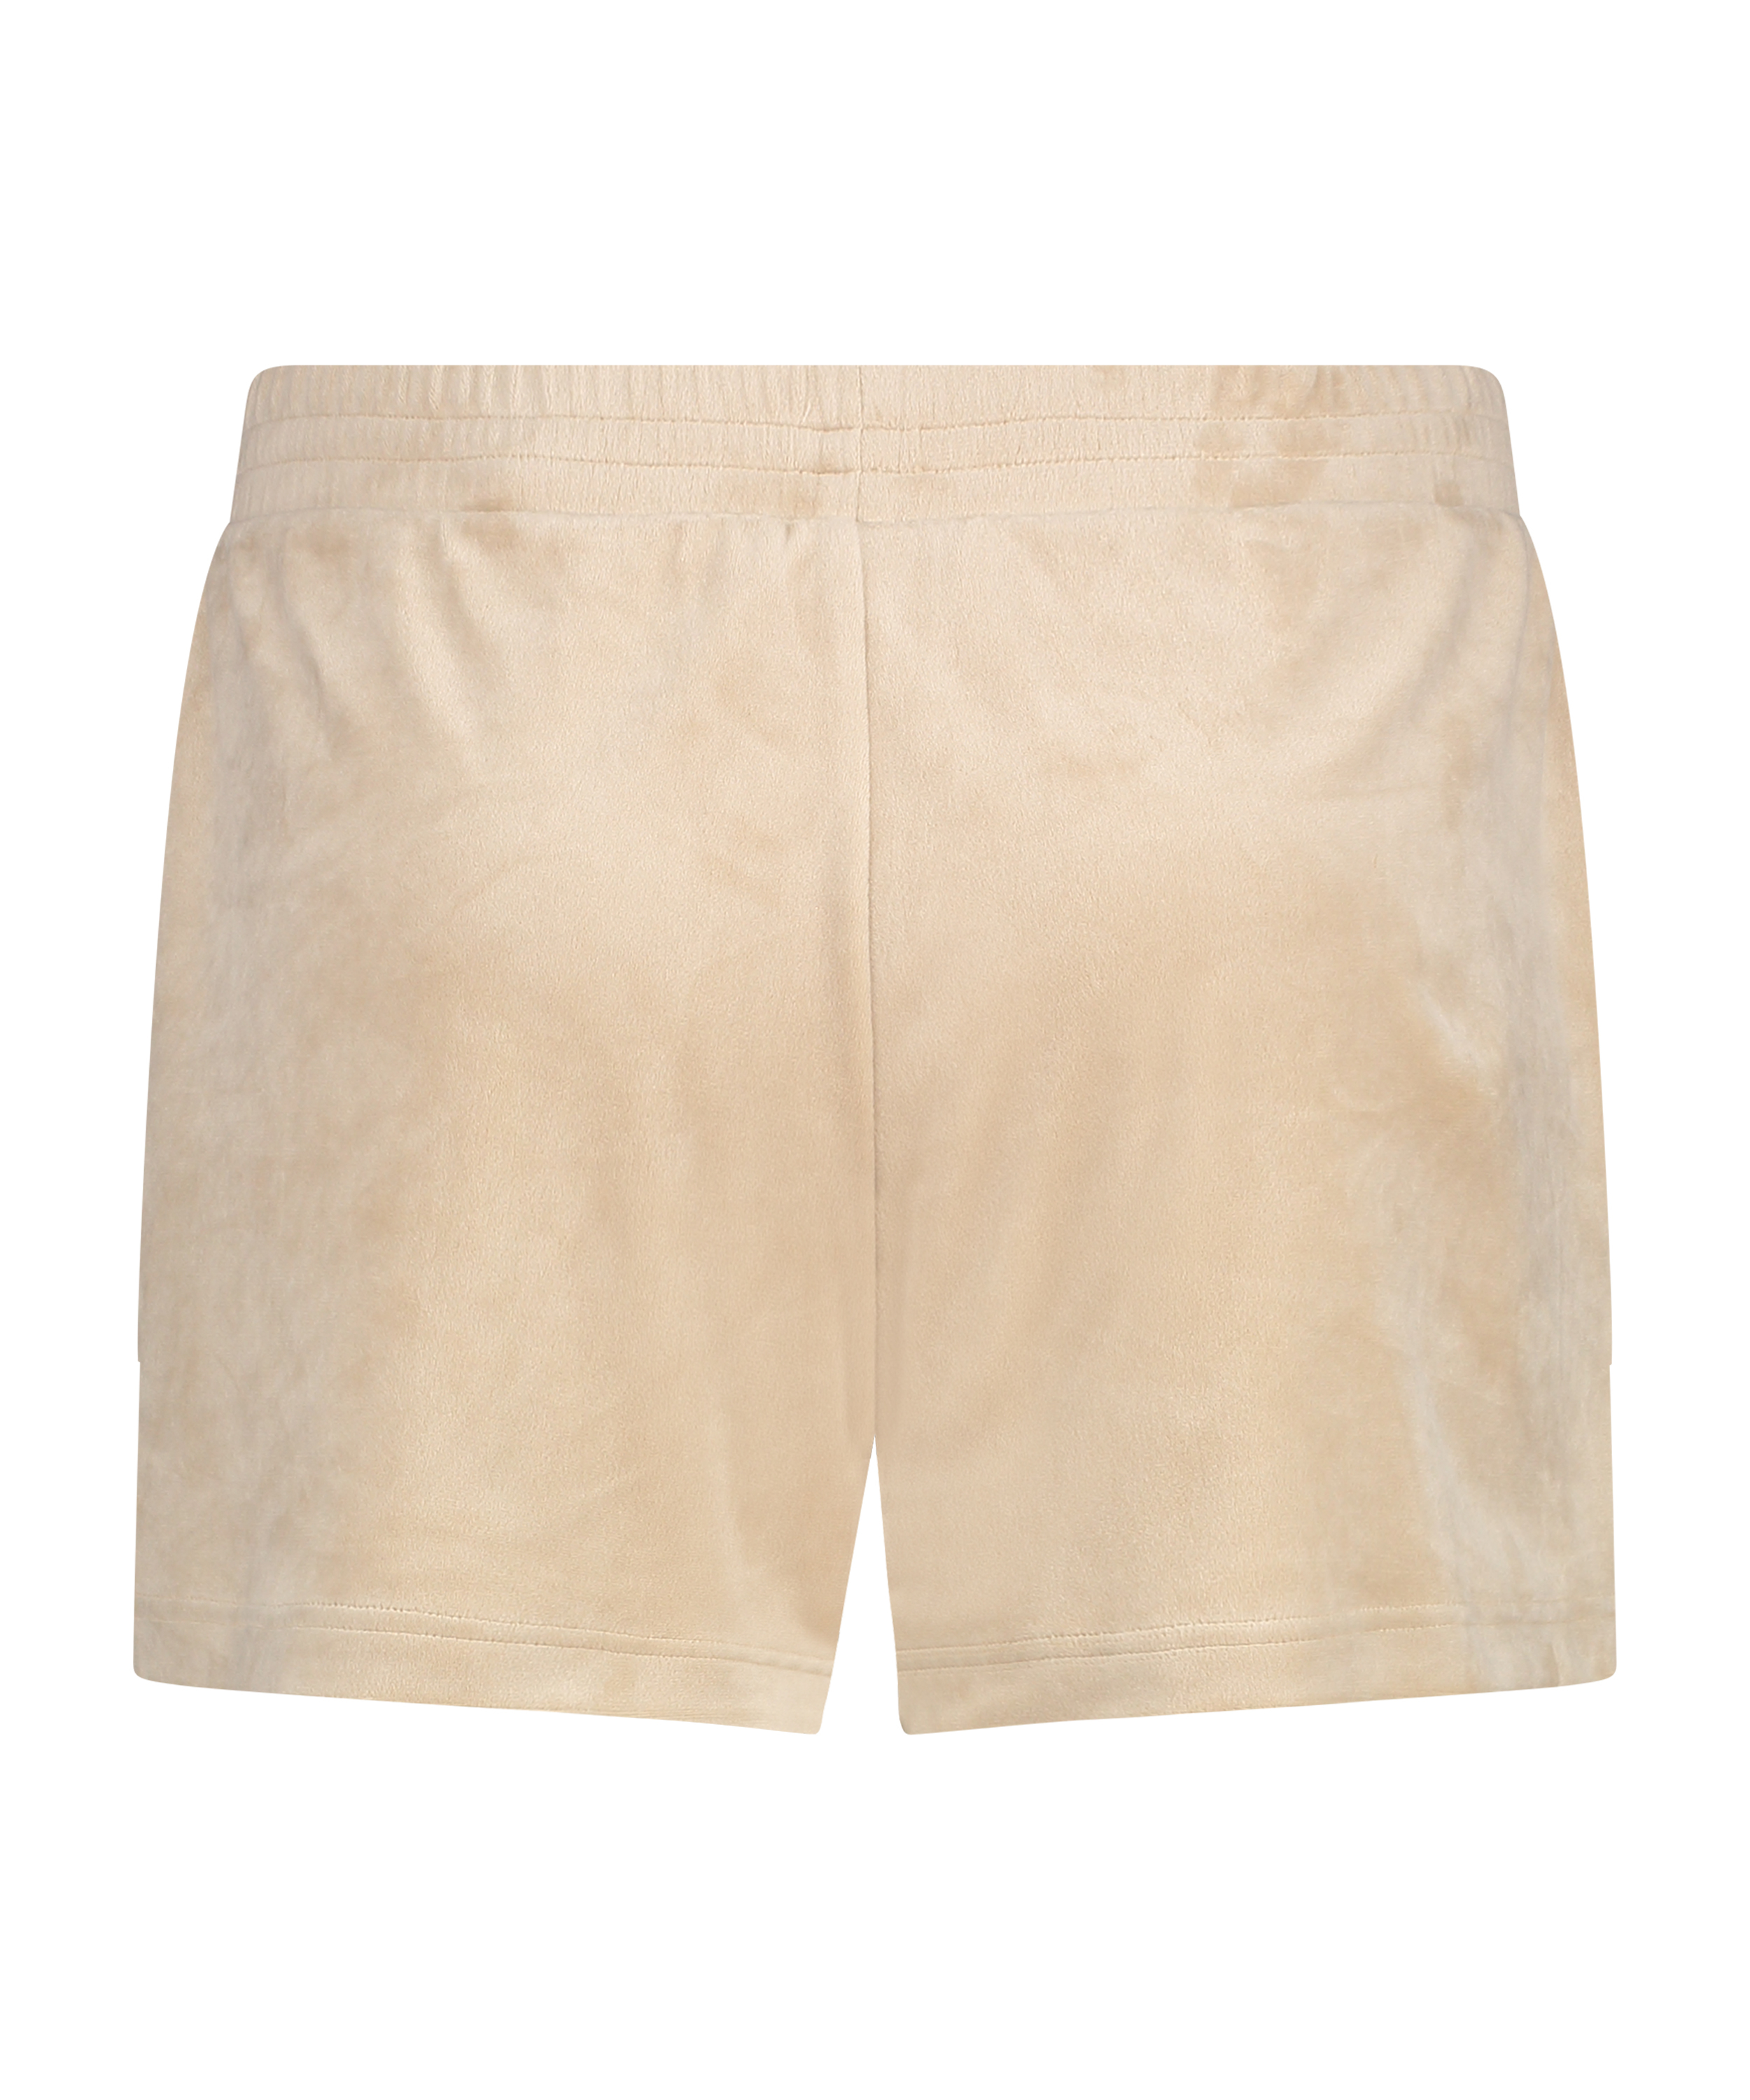 Velvet Pocket shorts, Beige, main